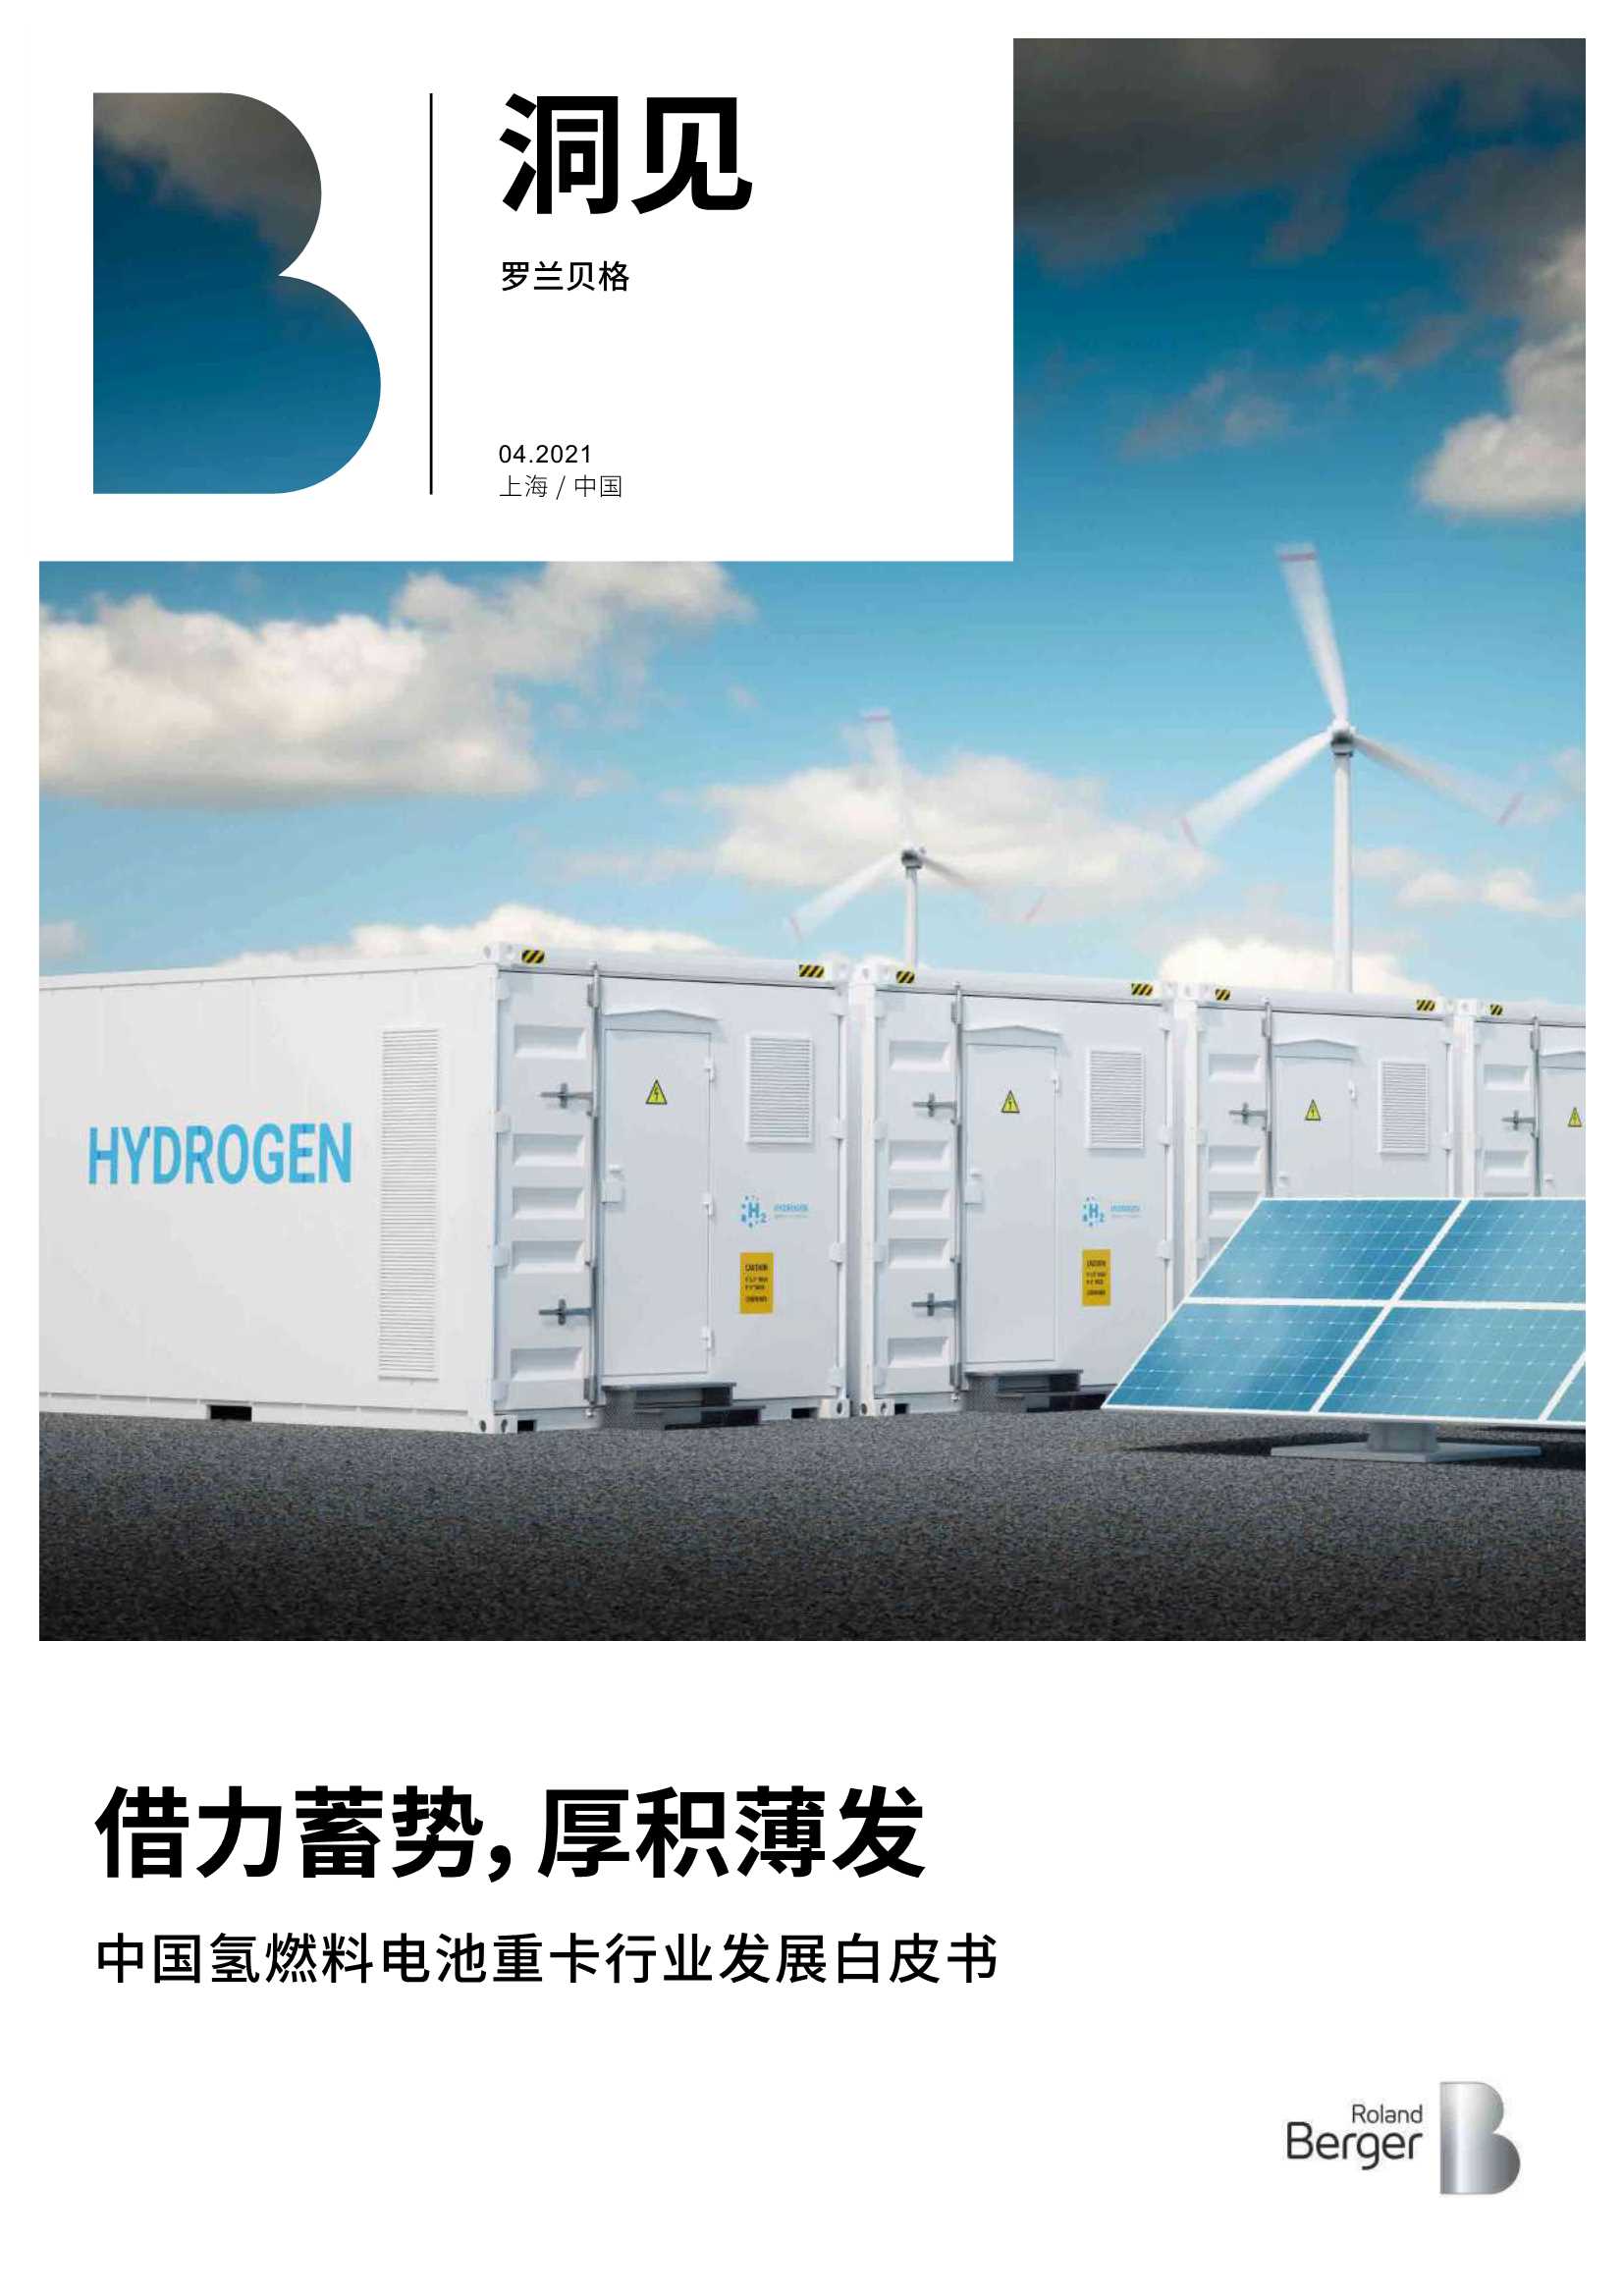 罗兰贝格-中国氢燃料电池重卡行业发展白皮书-2021.05-23页